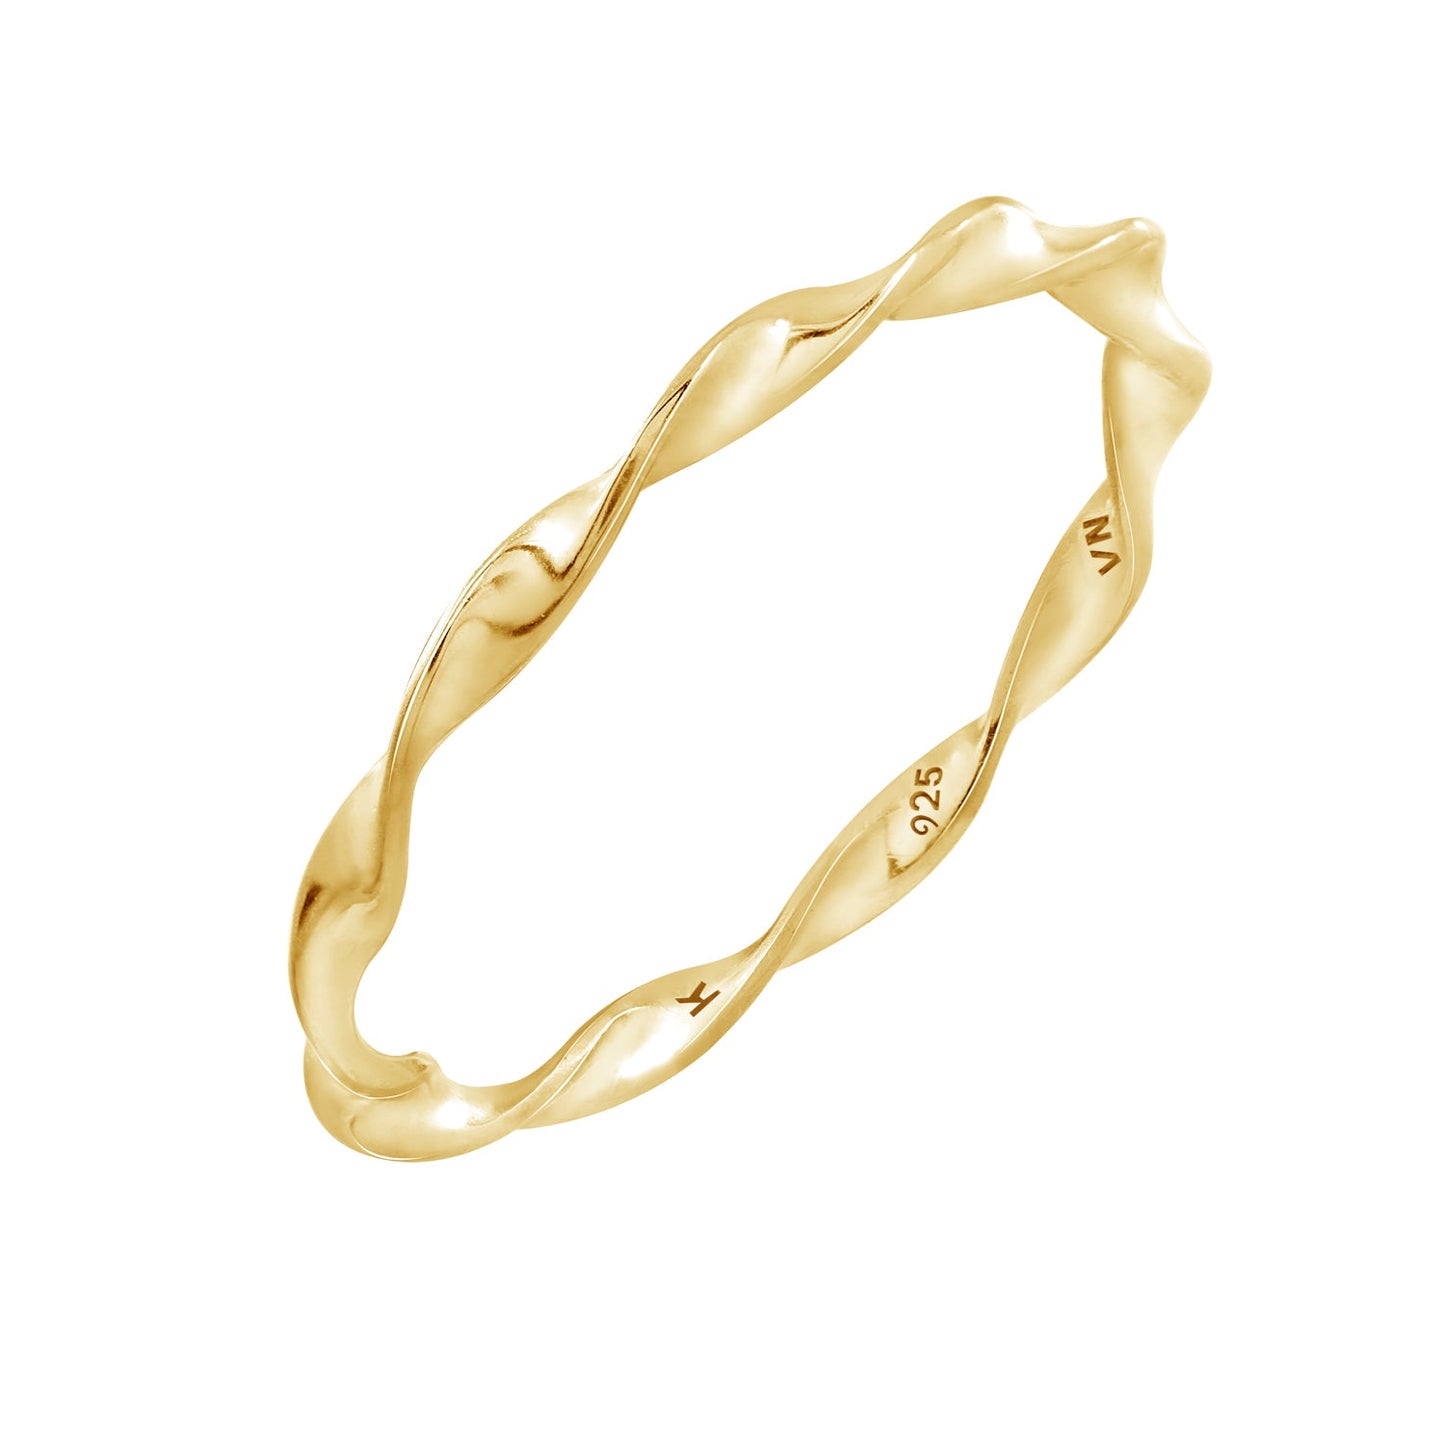 Golden Wave Ring